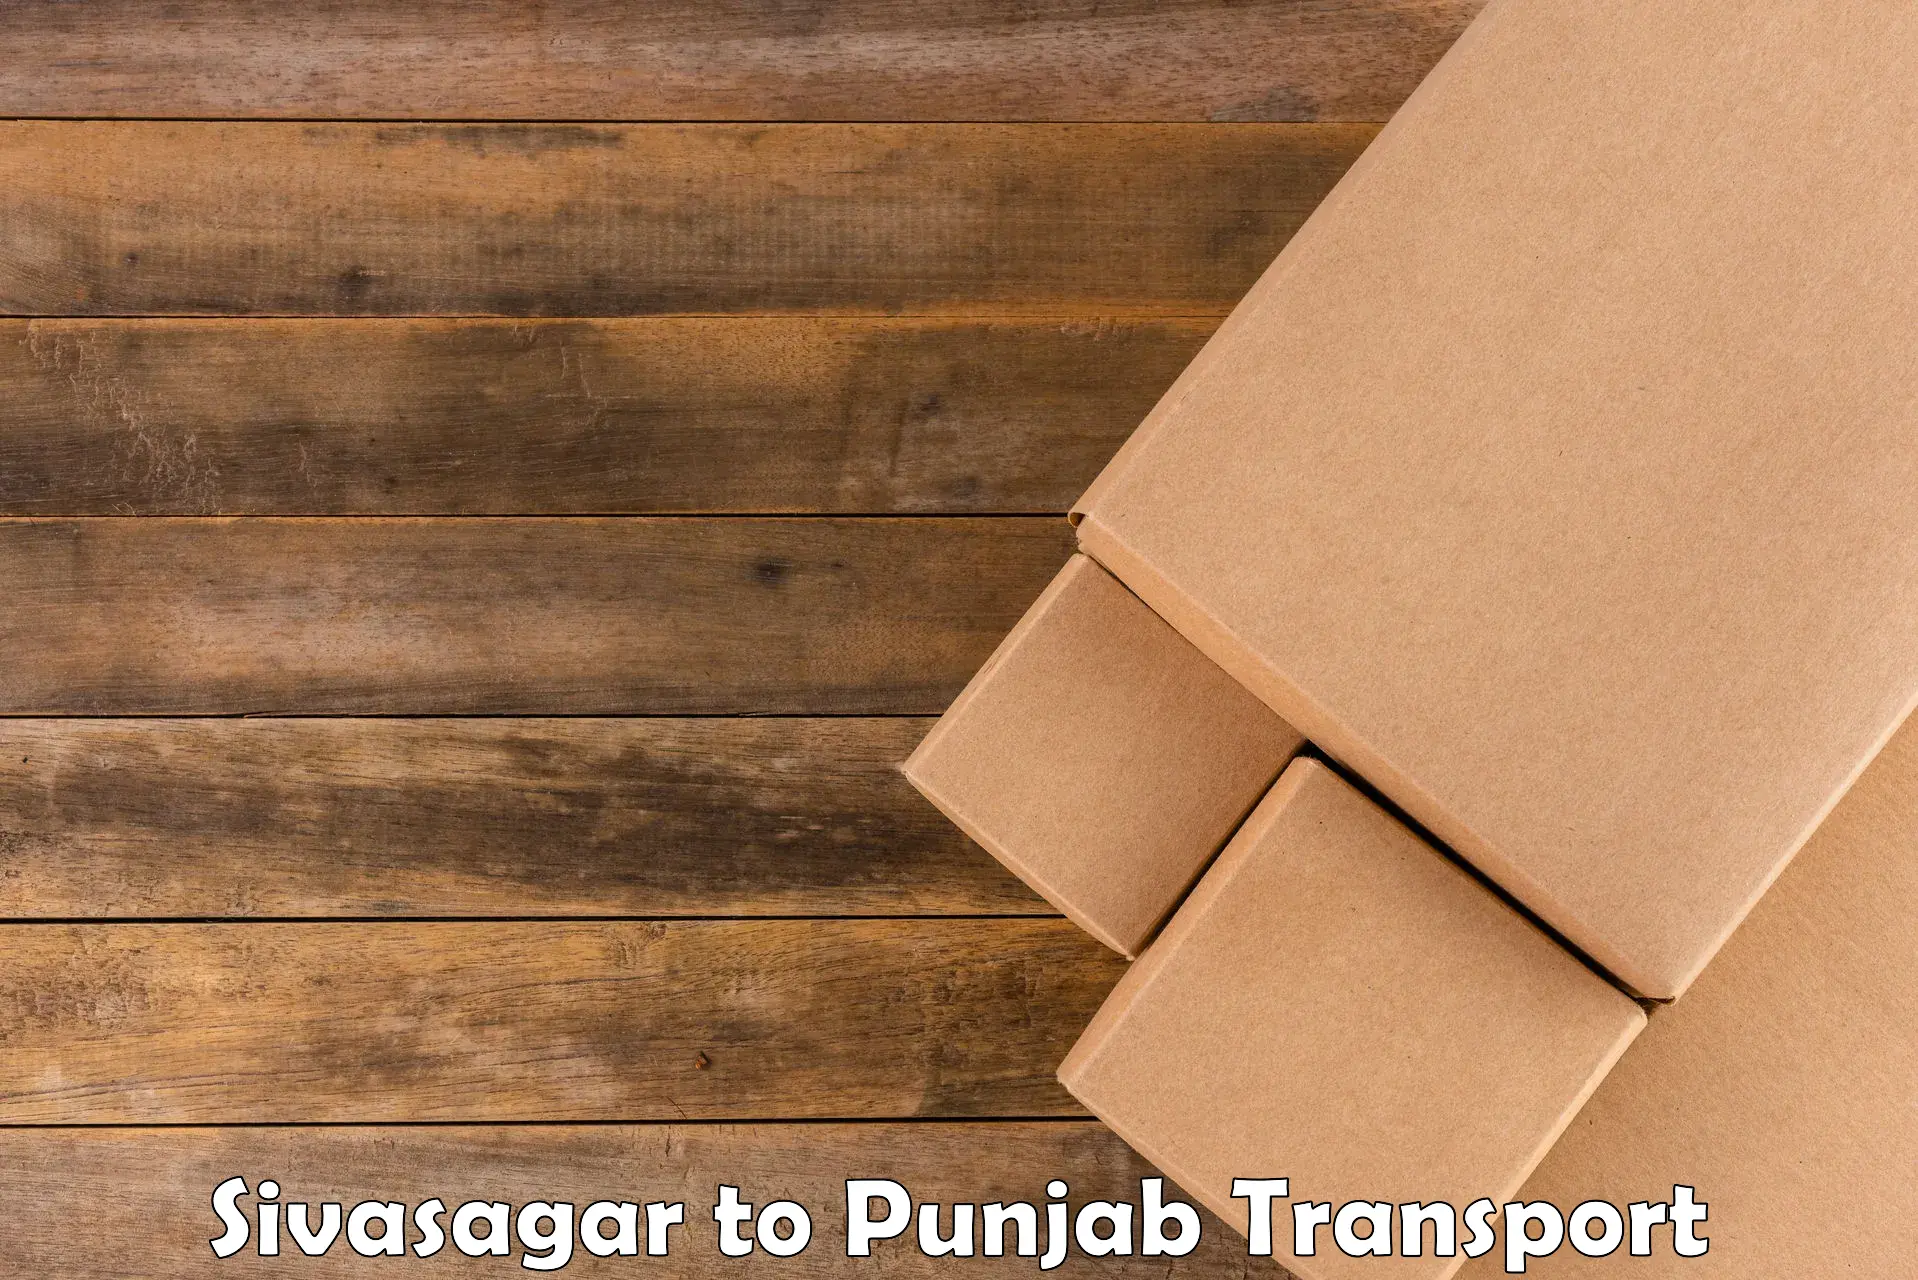 Express transport services Sivasagar to Punjab